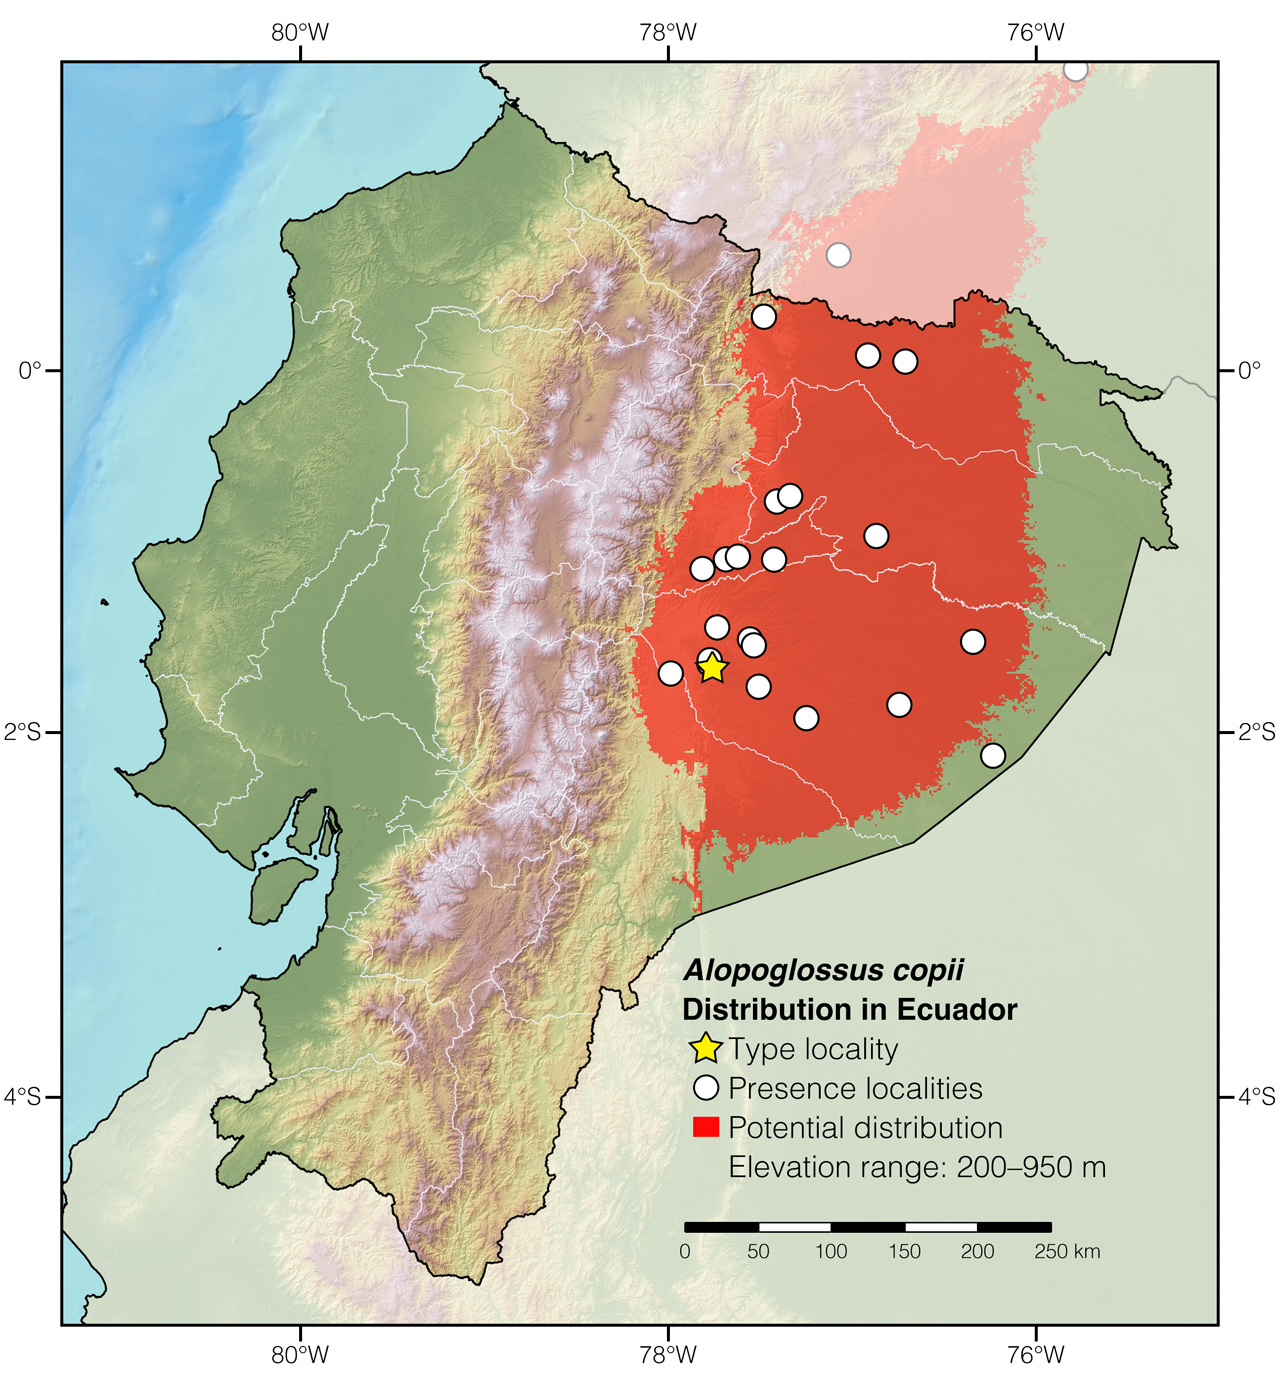 Distribution of Alopoglossus copii in Ecuador